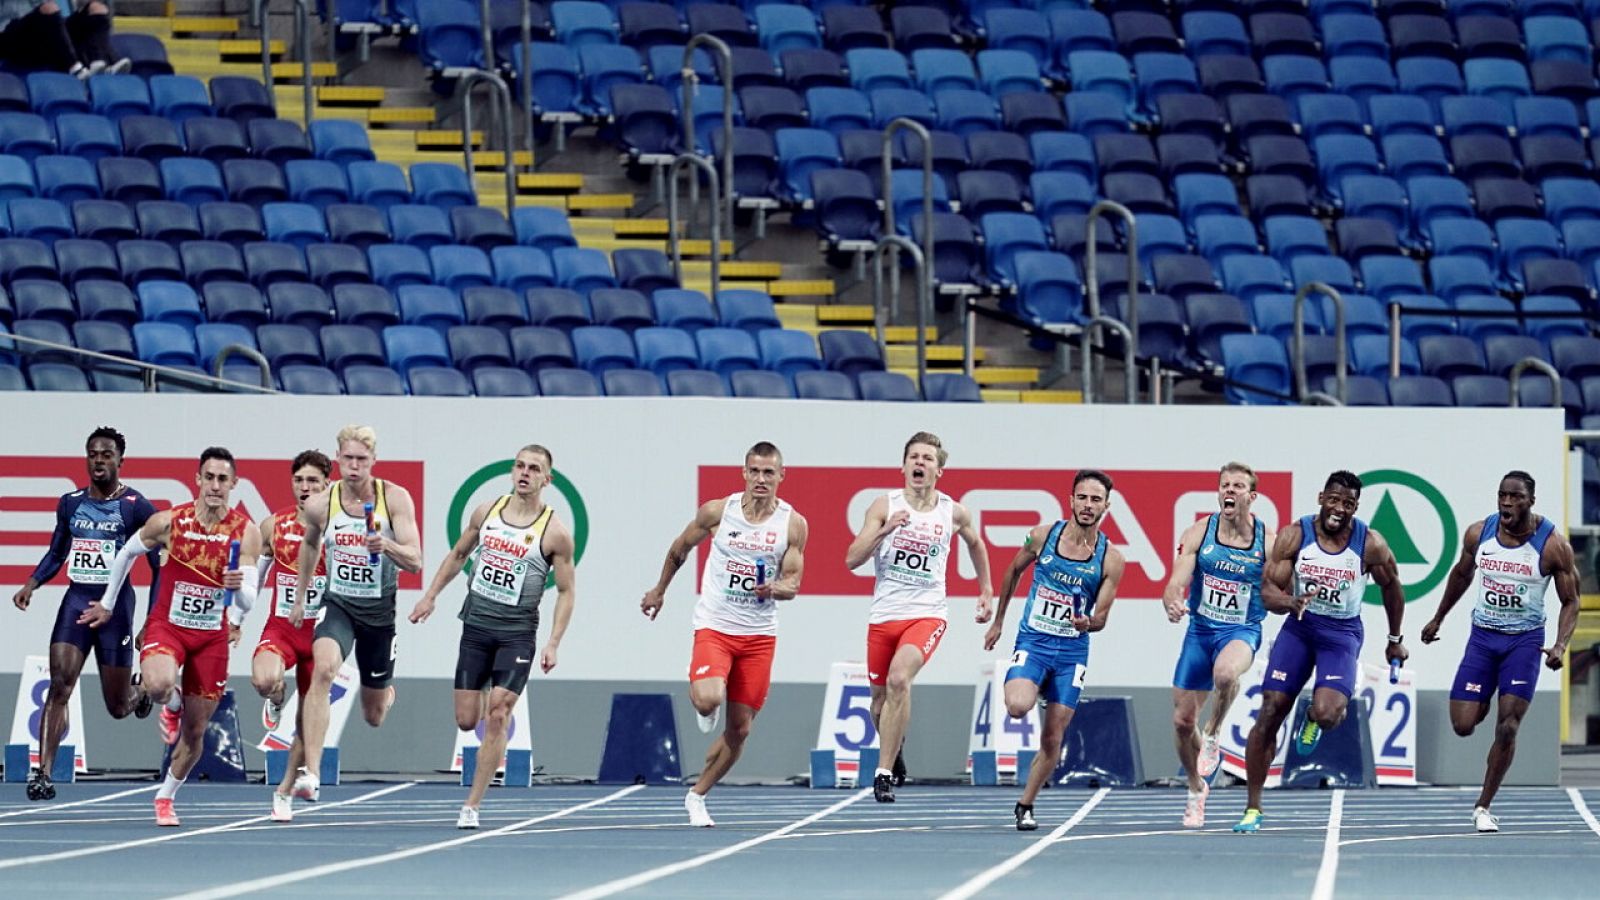 Atletismo - Campeonato de Europa de Naciones. 4x100m W y M